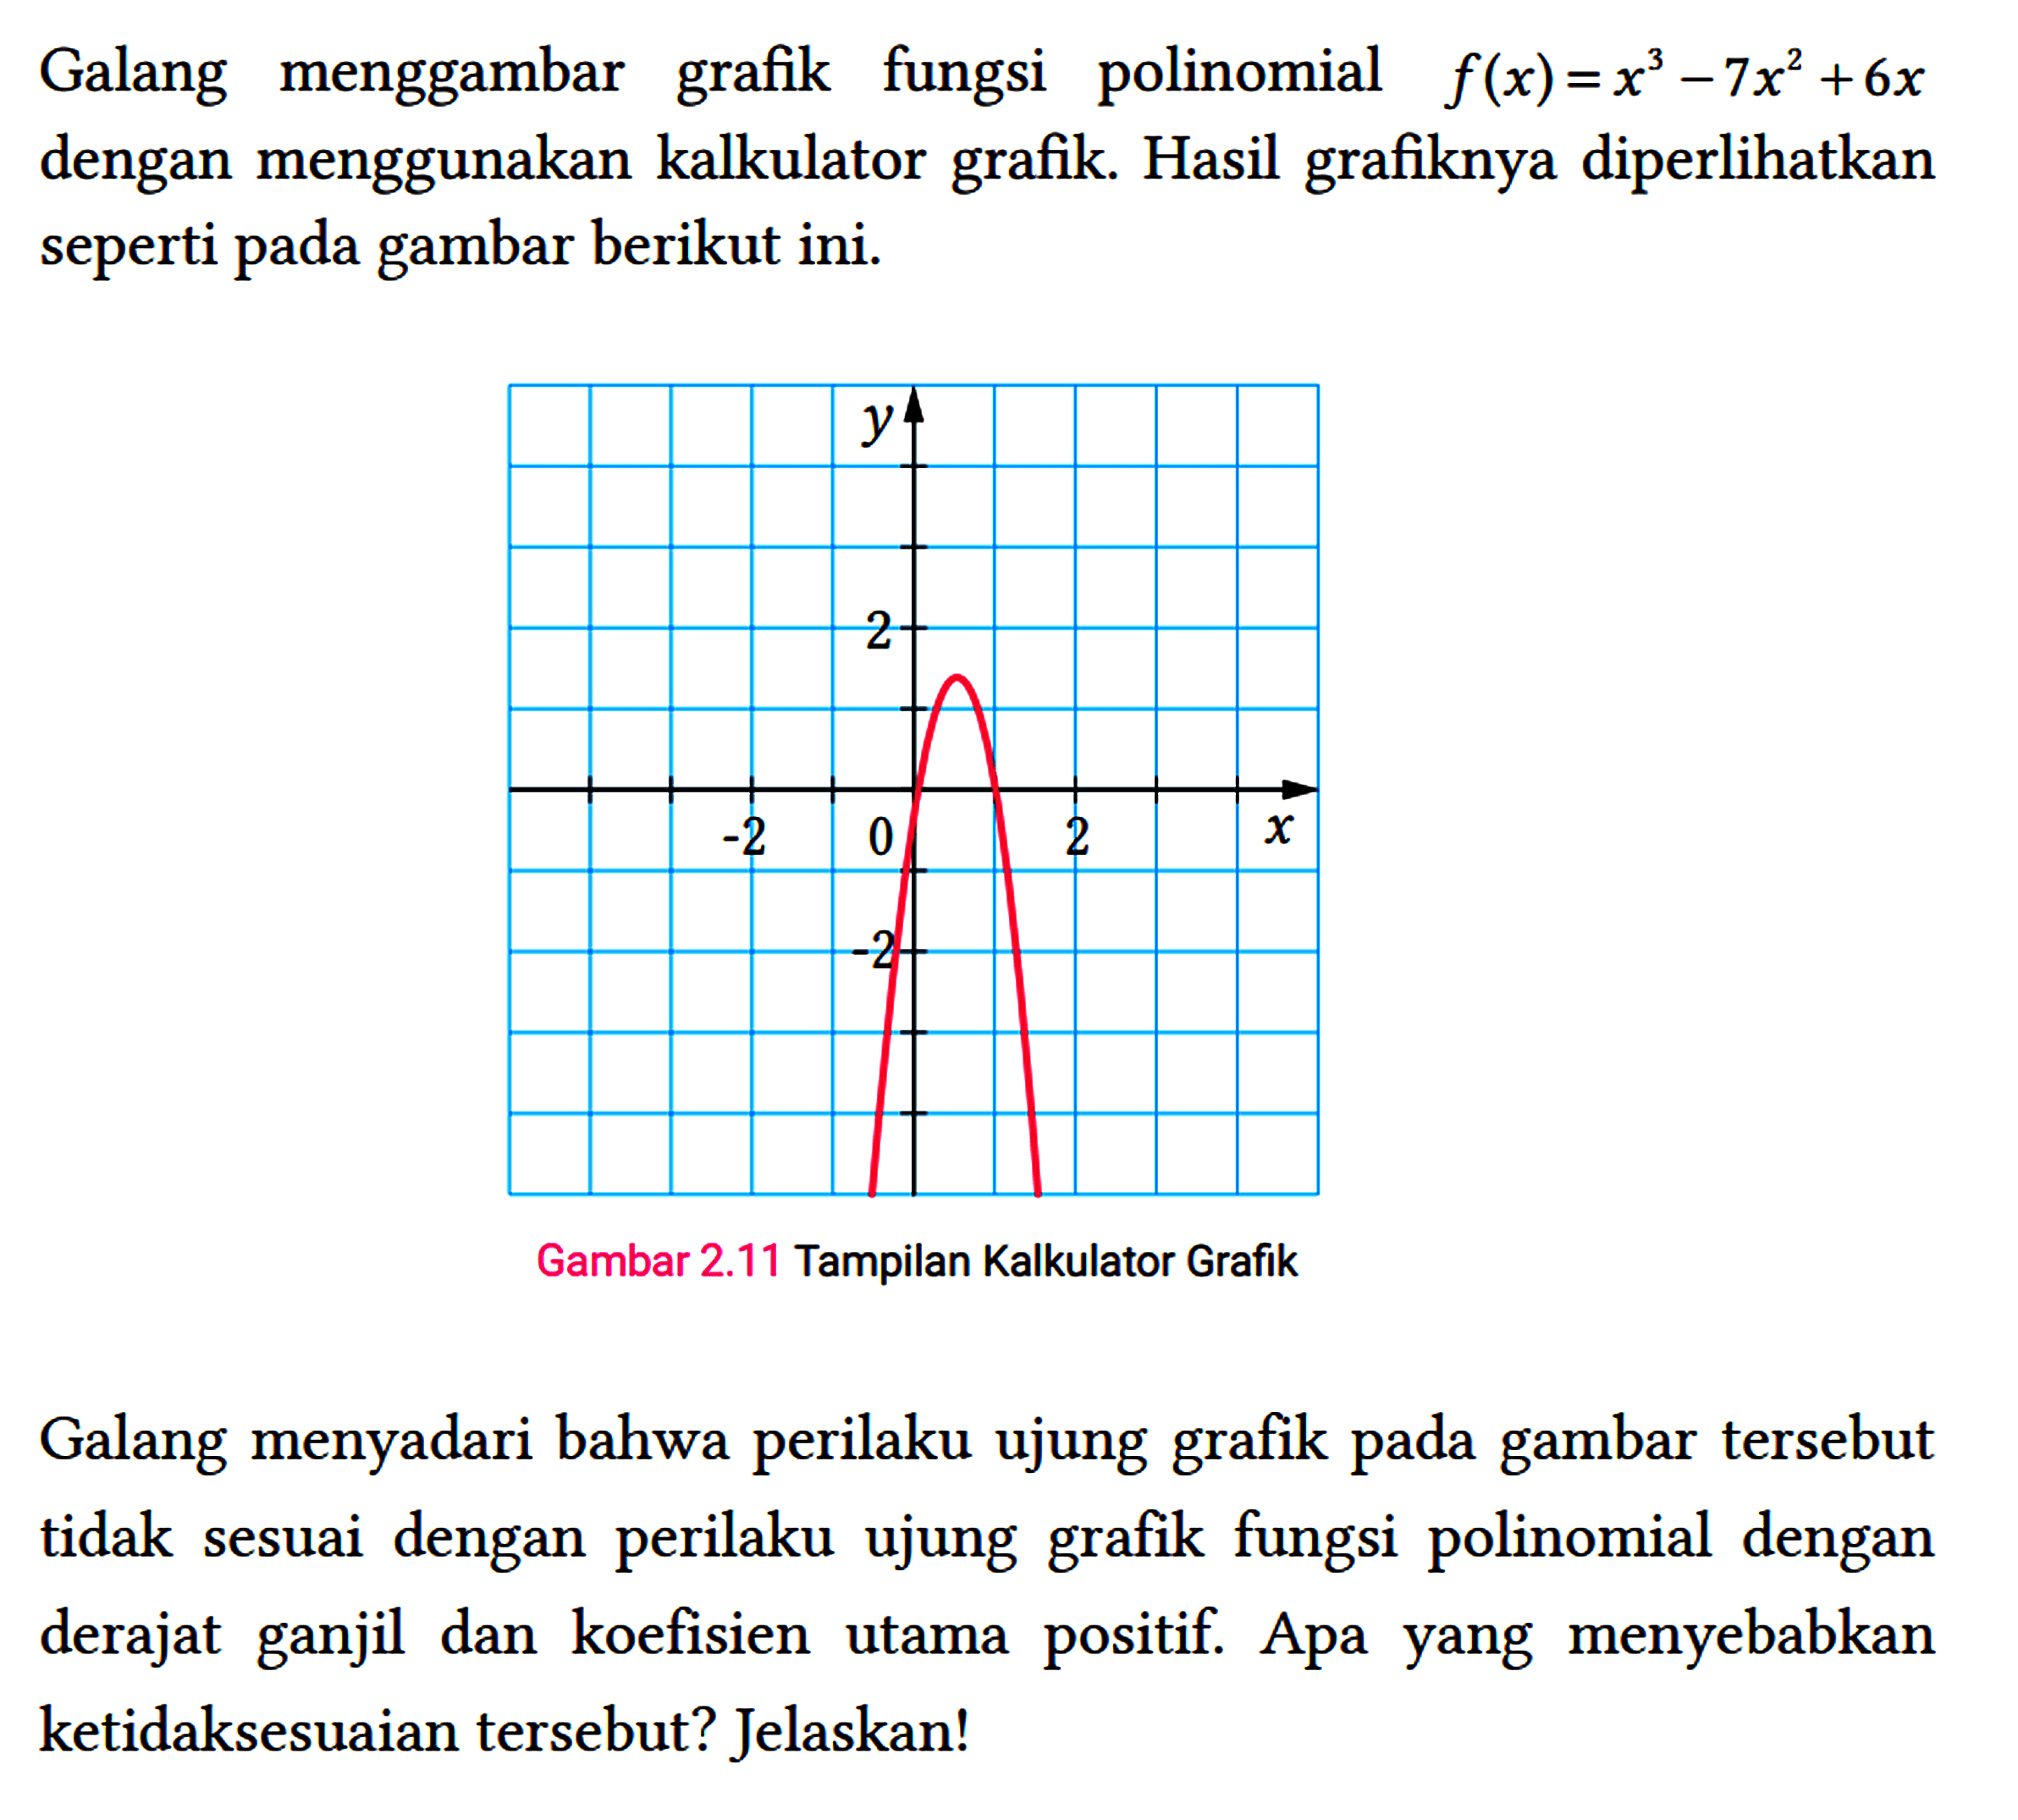 Galang menggambar grafik fungsi polinomial f(x)=x^(3)-7 x^(2)+6 x dengan menggunakan kalkulator grafik. Hasil grafiknya diperlihatkan seperti pada gambar berikut ini.
 Gambar 2.11 Tampilan Kalkulator Grafik
 Galang menyadari bahwa perilaku ujung grafik pada gambar tersebut tidak sesuai dengan perilaku ujung grafik fungsi polinomial dengan derajat ganjil dan koefisien utama positif. Apa yang menyebabkan ketidaksesuaian tersebut? Jelaskan!